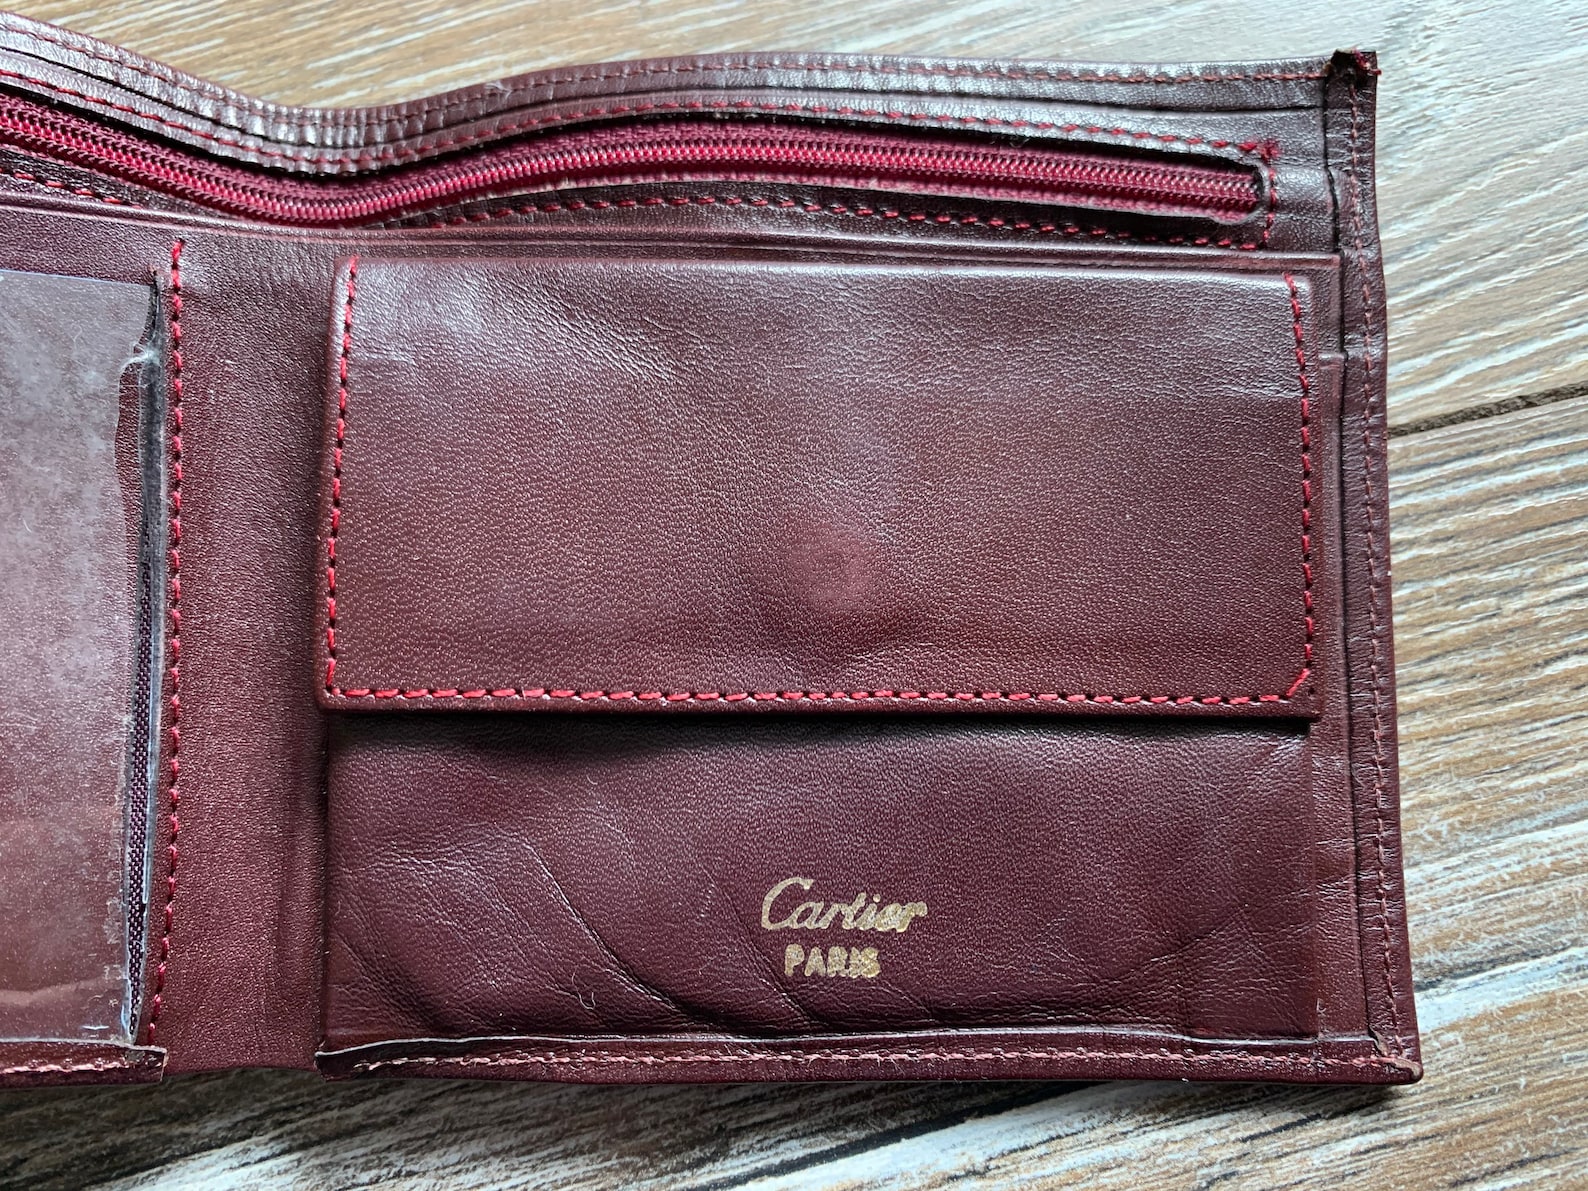 Cartier PARIS Leather Wallet Purse Rare Vintage AUTH | Etsy